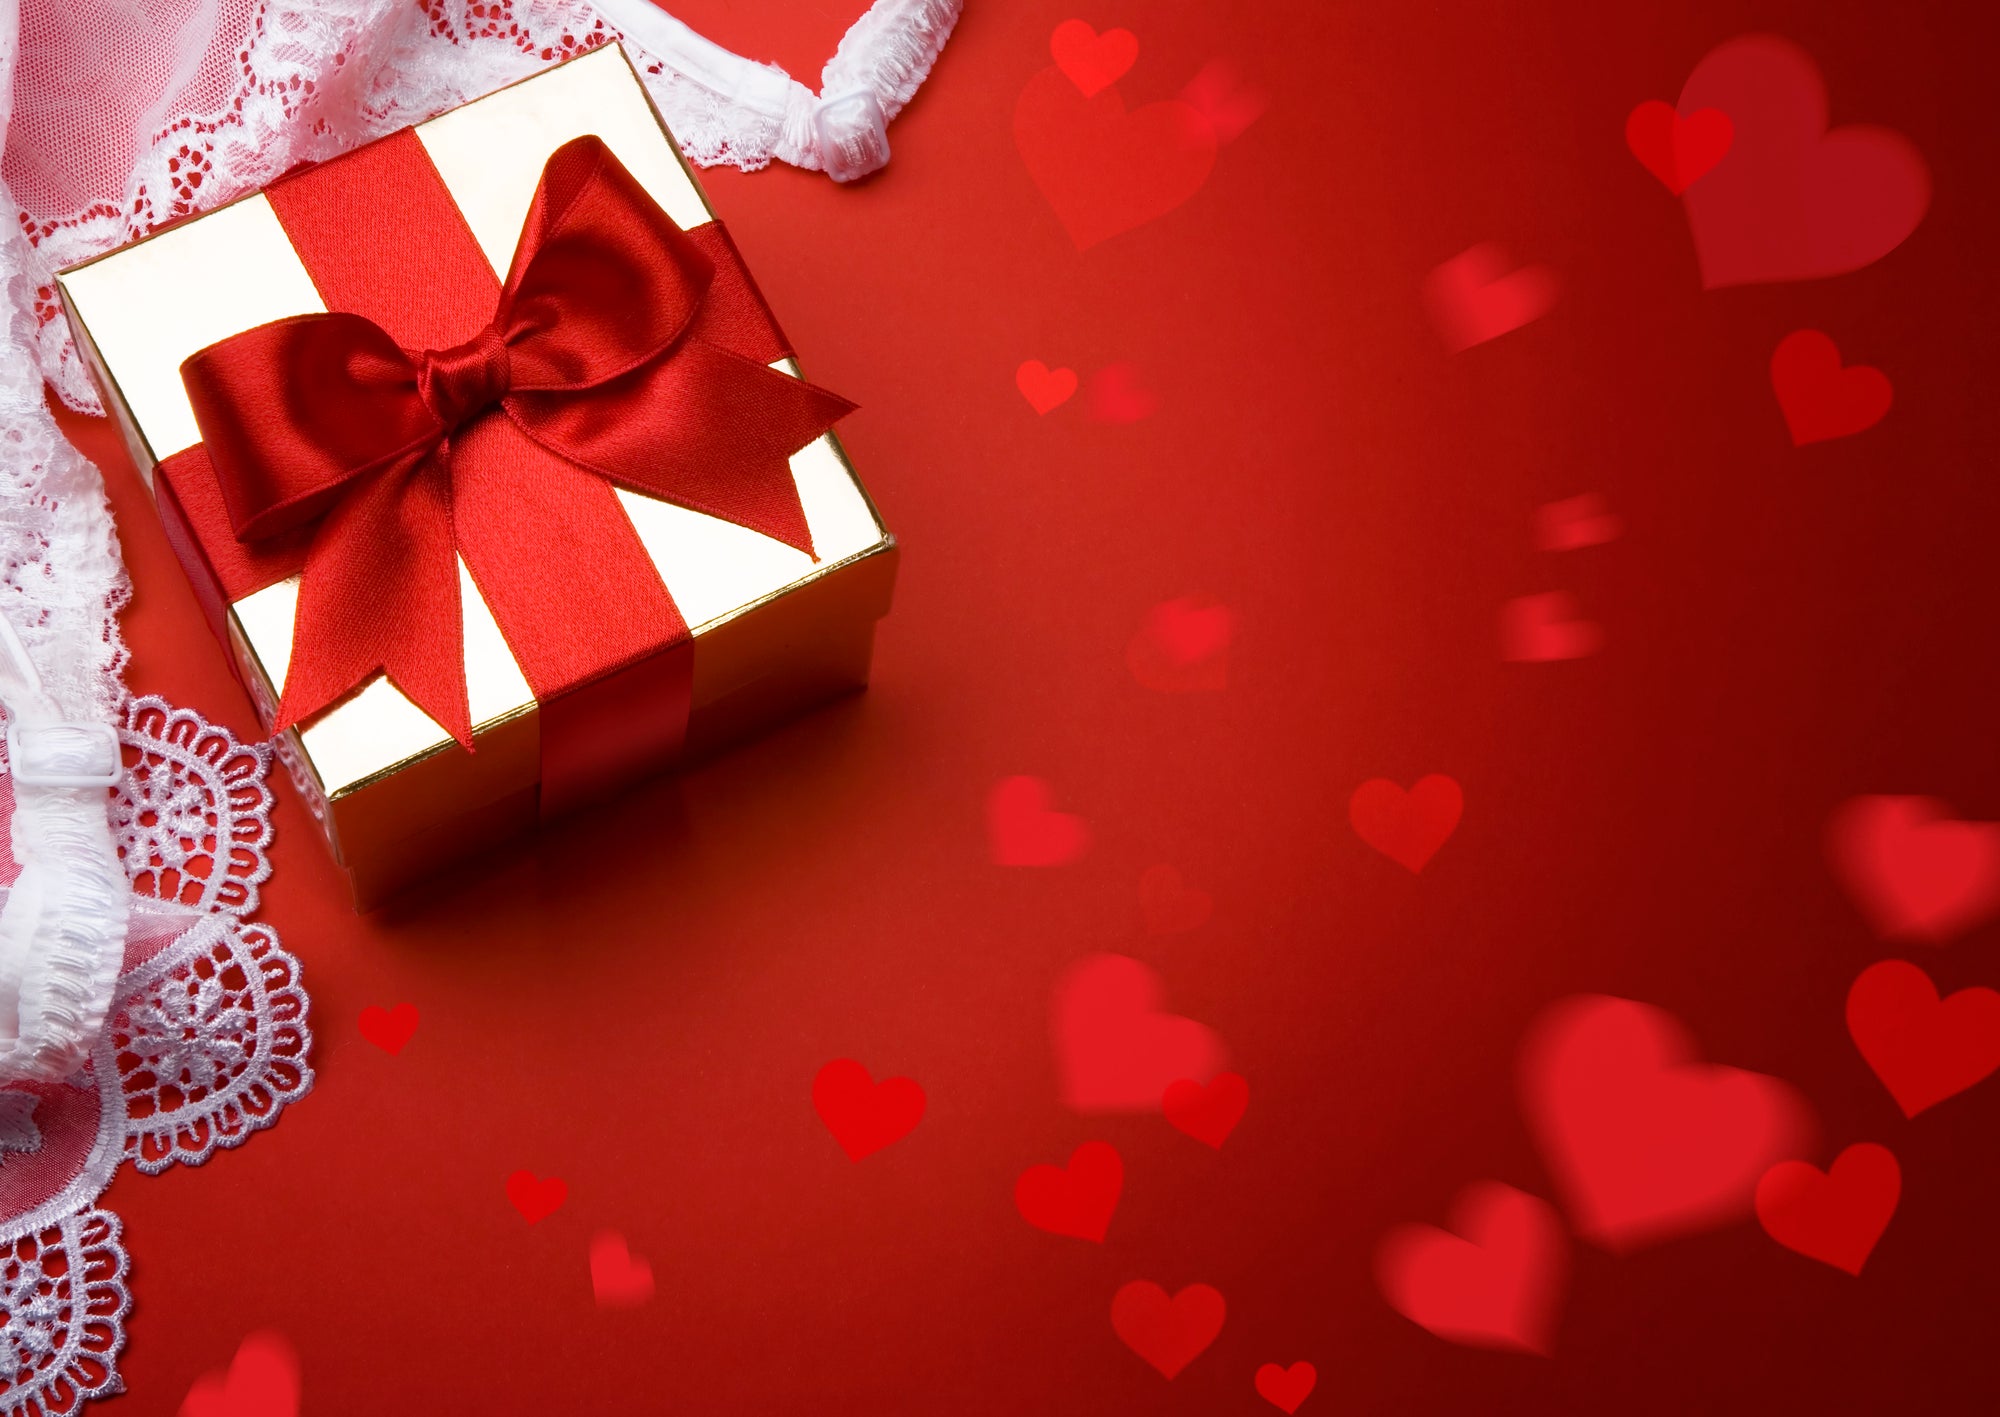 Lingerie: Men go offline to shop for lingerie as V-Day gift